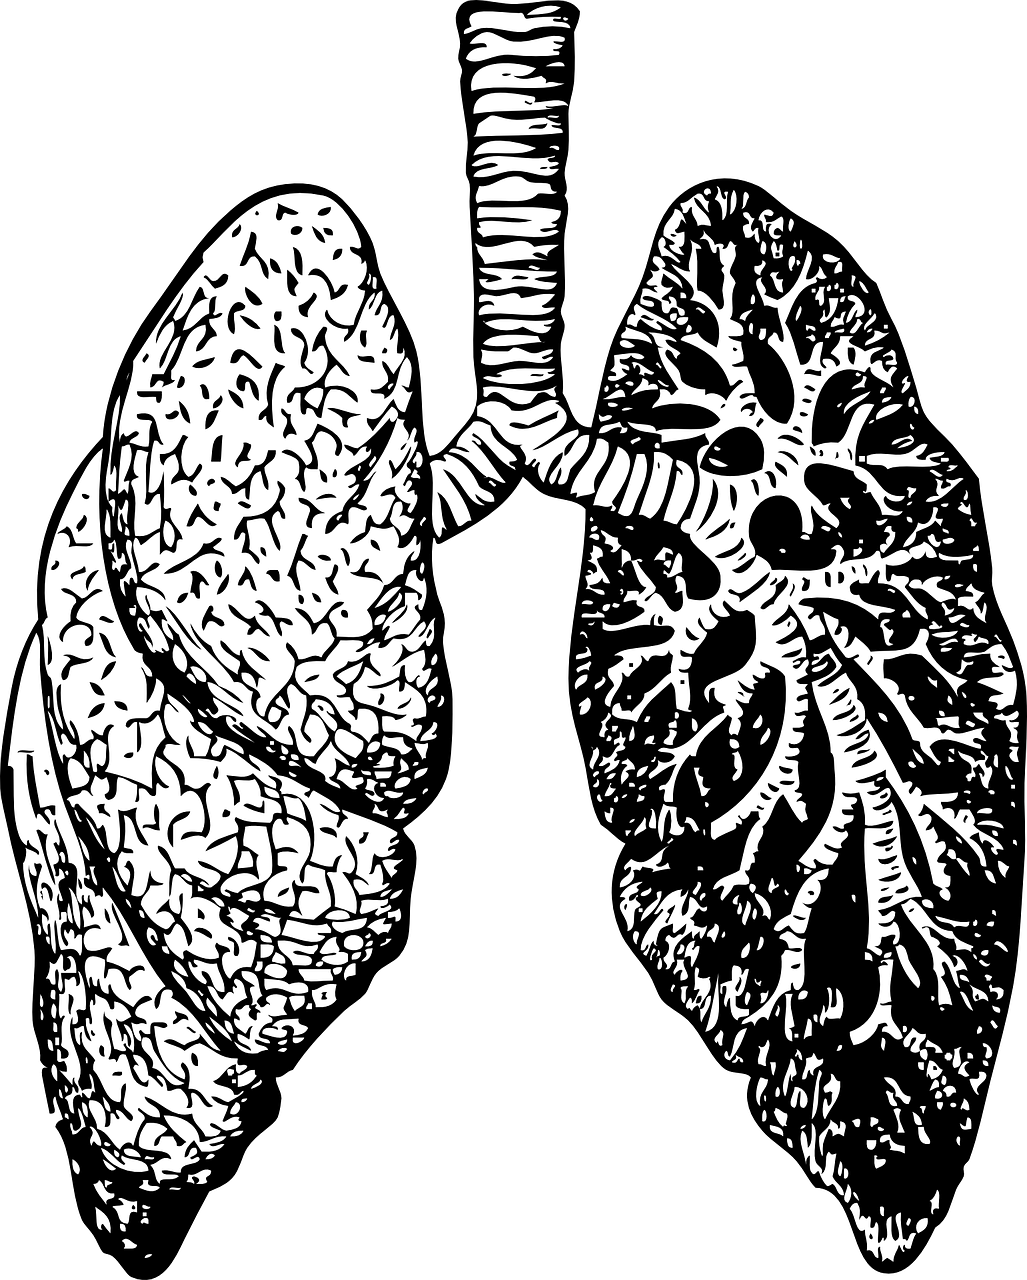 之前的文章,我们已经介绍过肺纤维患者经常会有哪些症状与体征了